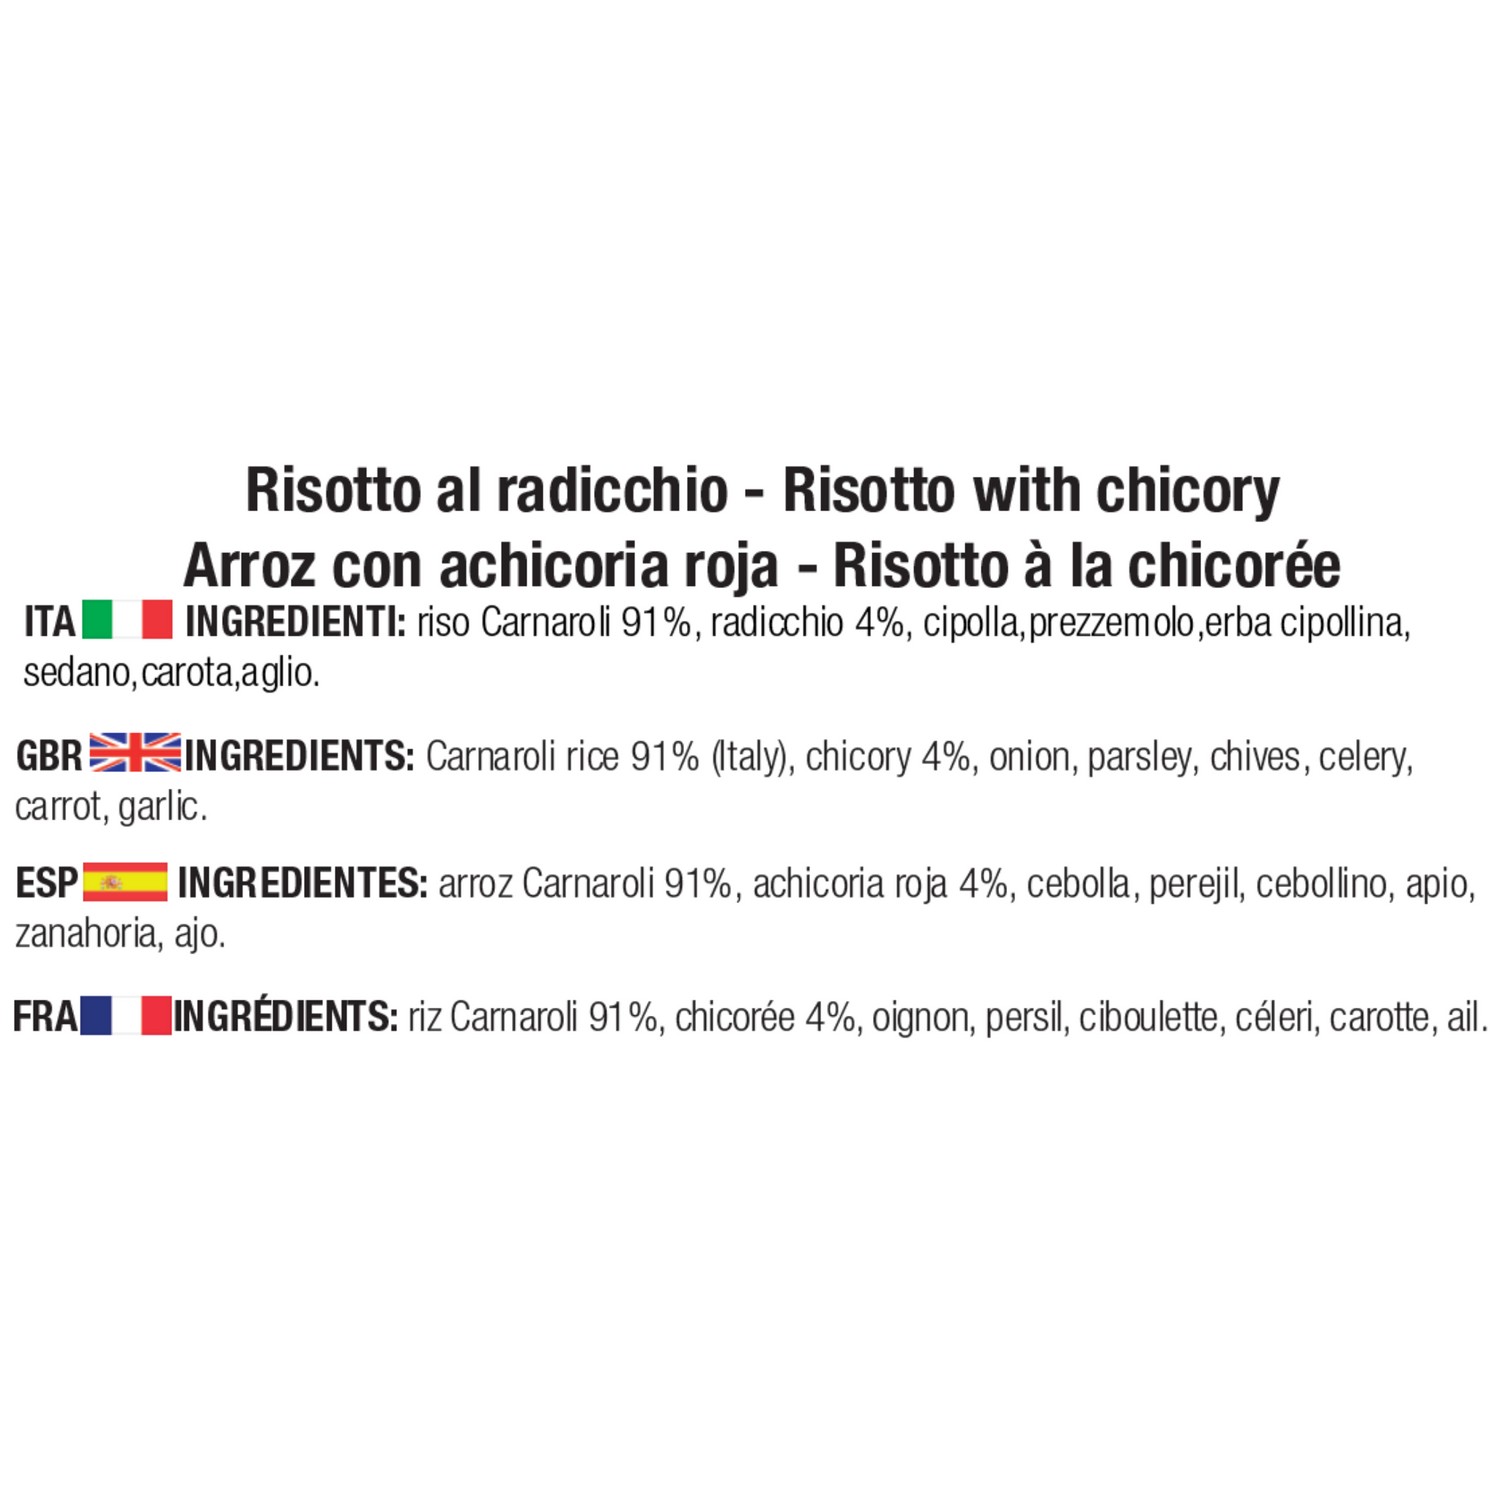 Ingredienti del risotto al Radicchio: riso Carnaroli 91%, radicchio 4%, cipolla, prezzemolo, erba cipollina, sedano, carota, aglio.